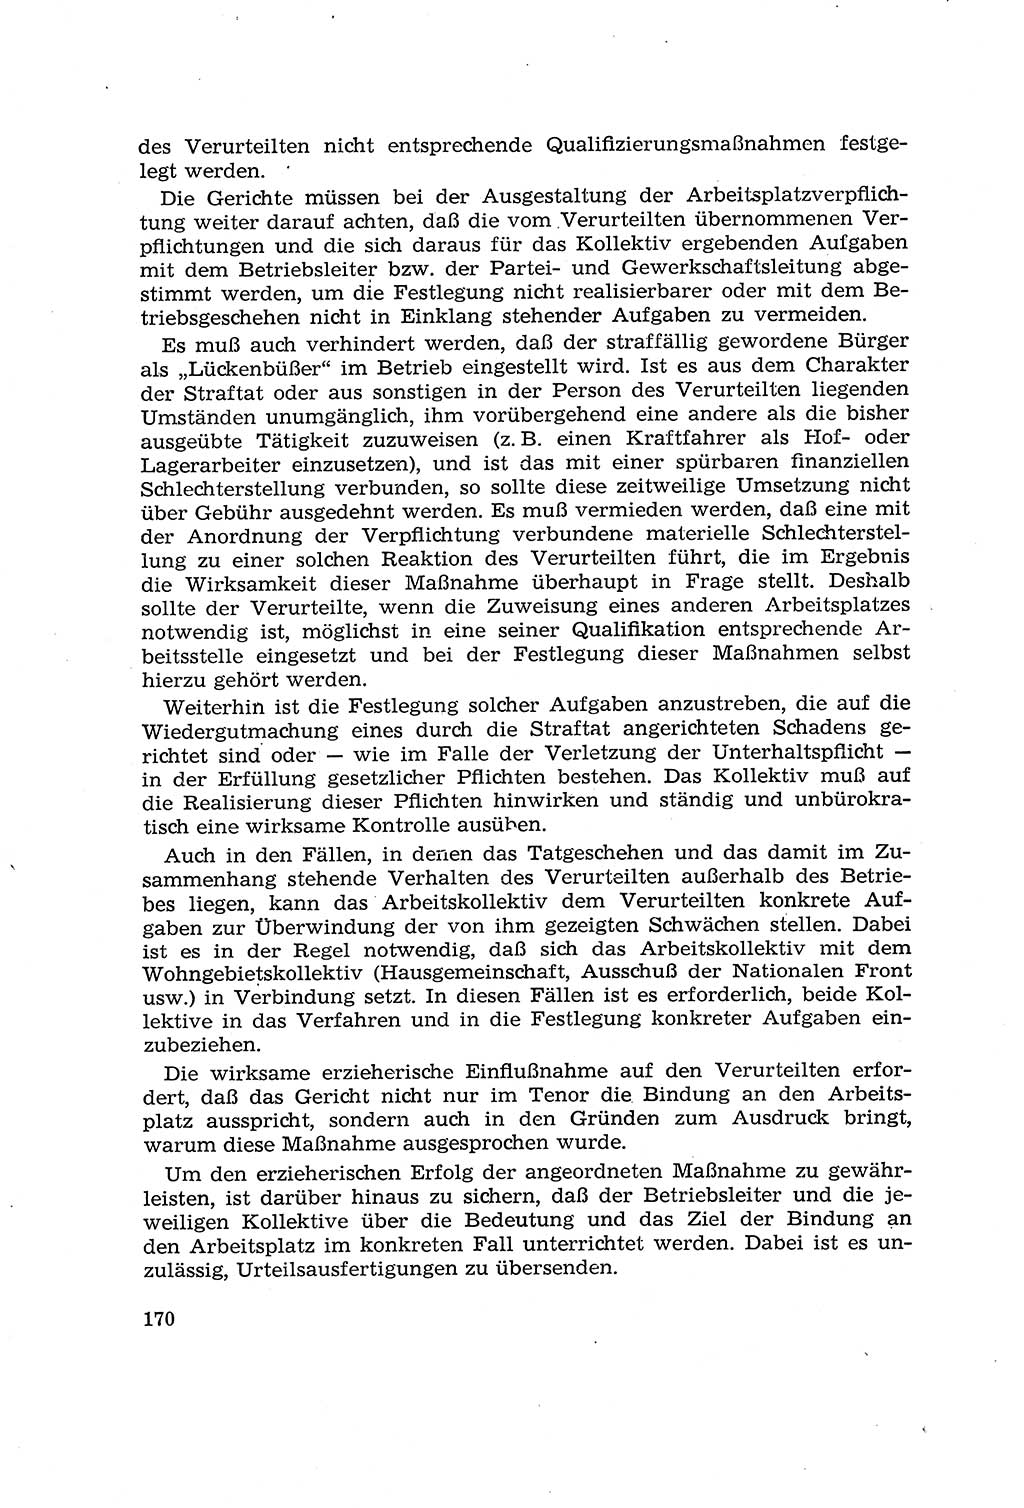 Die Mitwirkung der Werktätigen am Strafverfahren [Deutsche Demokratische Republik (DDR)] 1966, Seite 170 (Mitw. Str.-Verf. DDR 1966, S. 170)